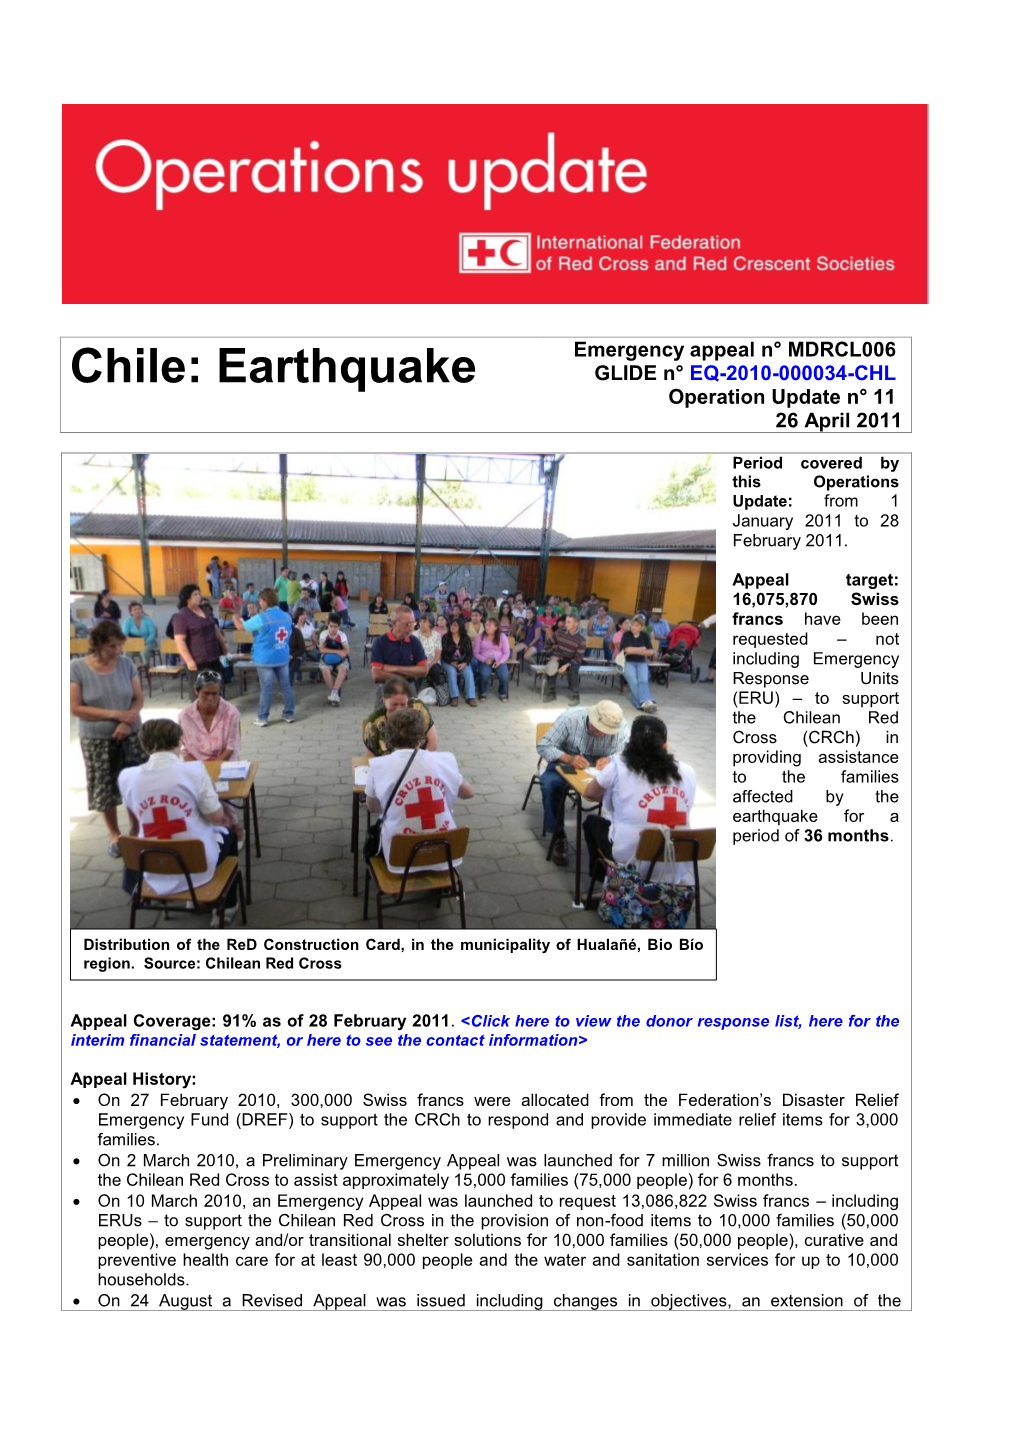 Chile: Earthquake GLIDE N° EQ-2010-000034-CHL Operation Update N° 11 26 April 2011